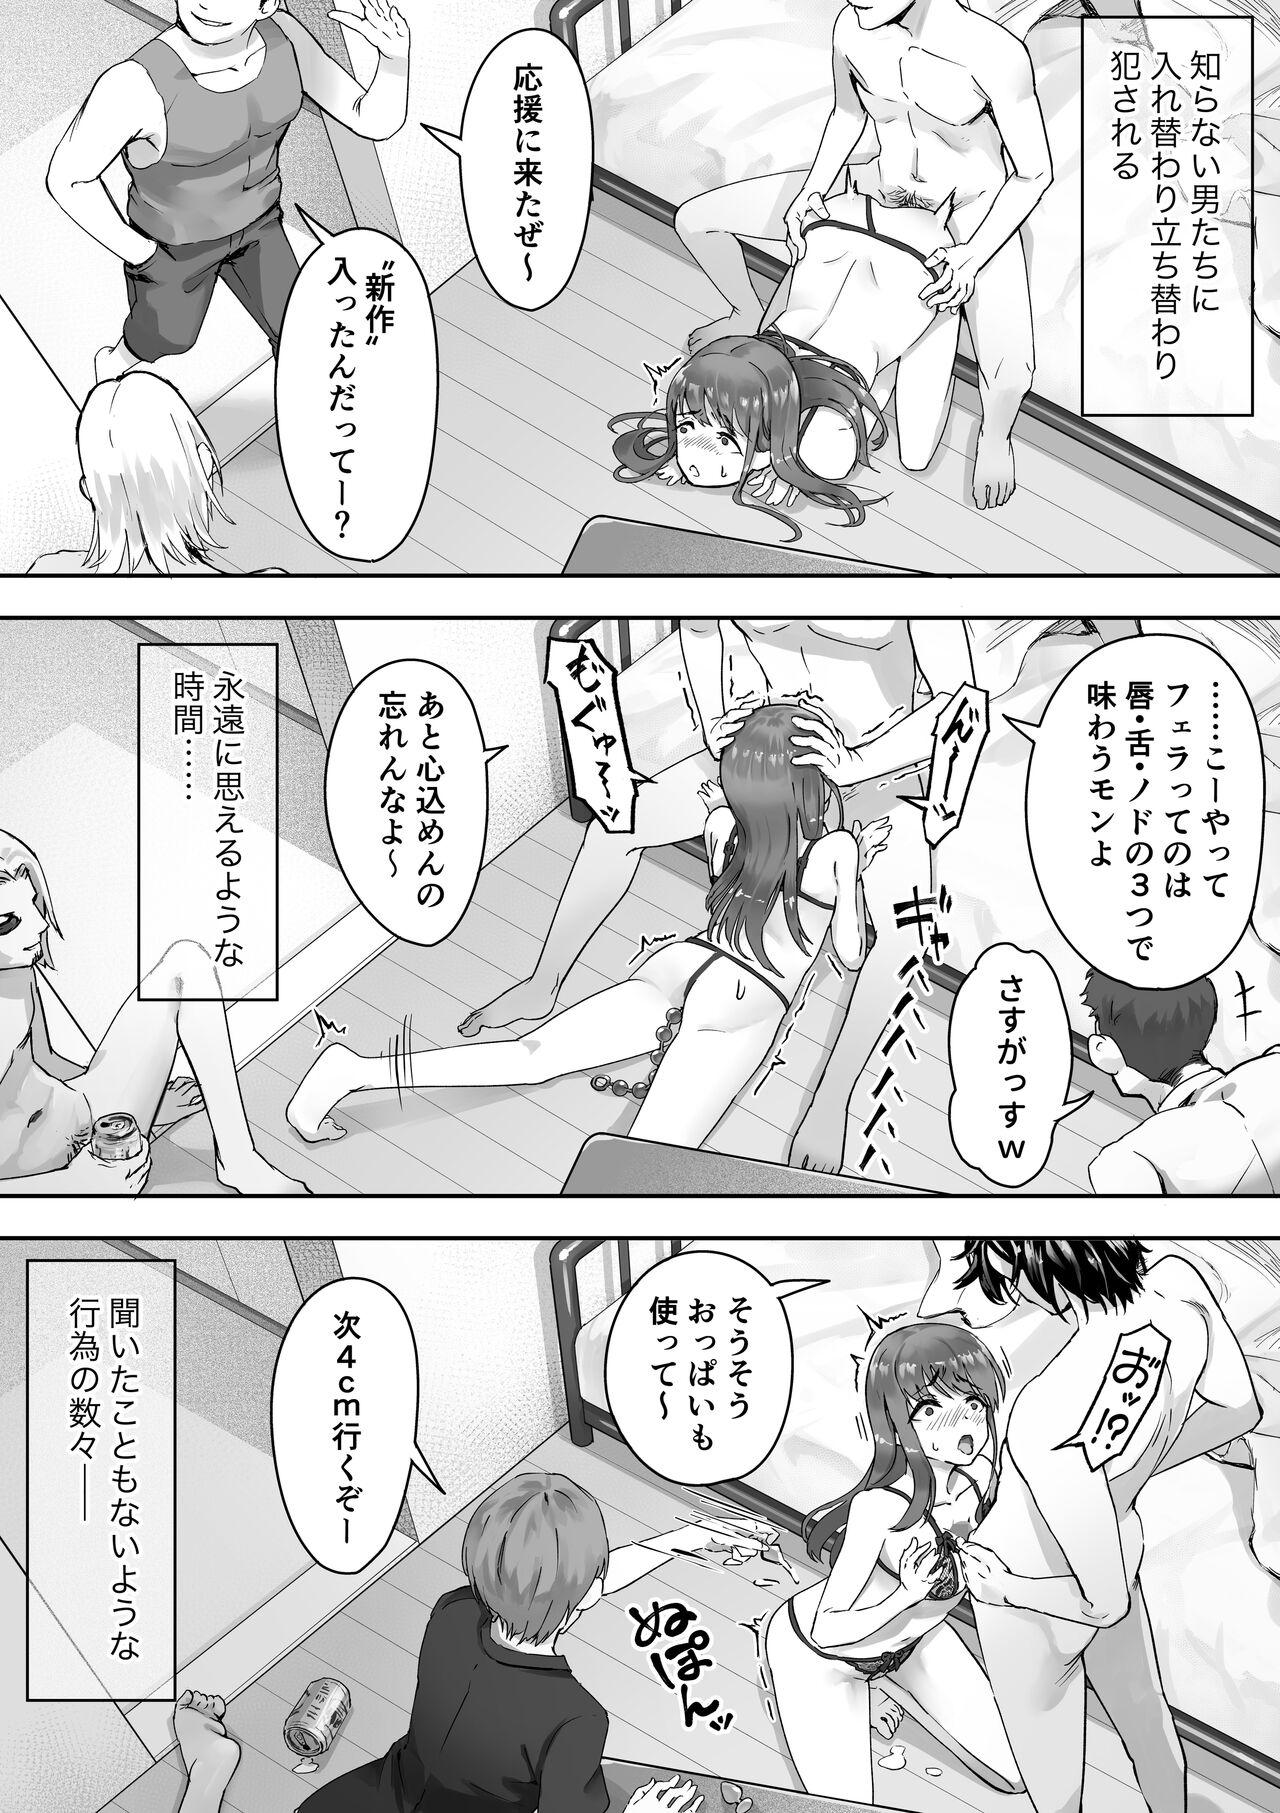 Putinha Ore ga Saki ni Suki datta kara yoo 2 - Original Penetration - Page 6